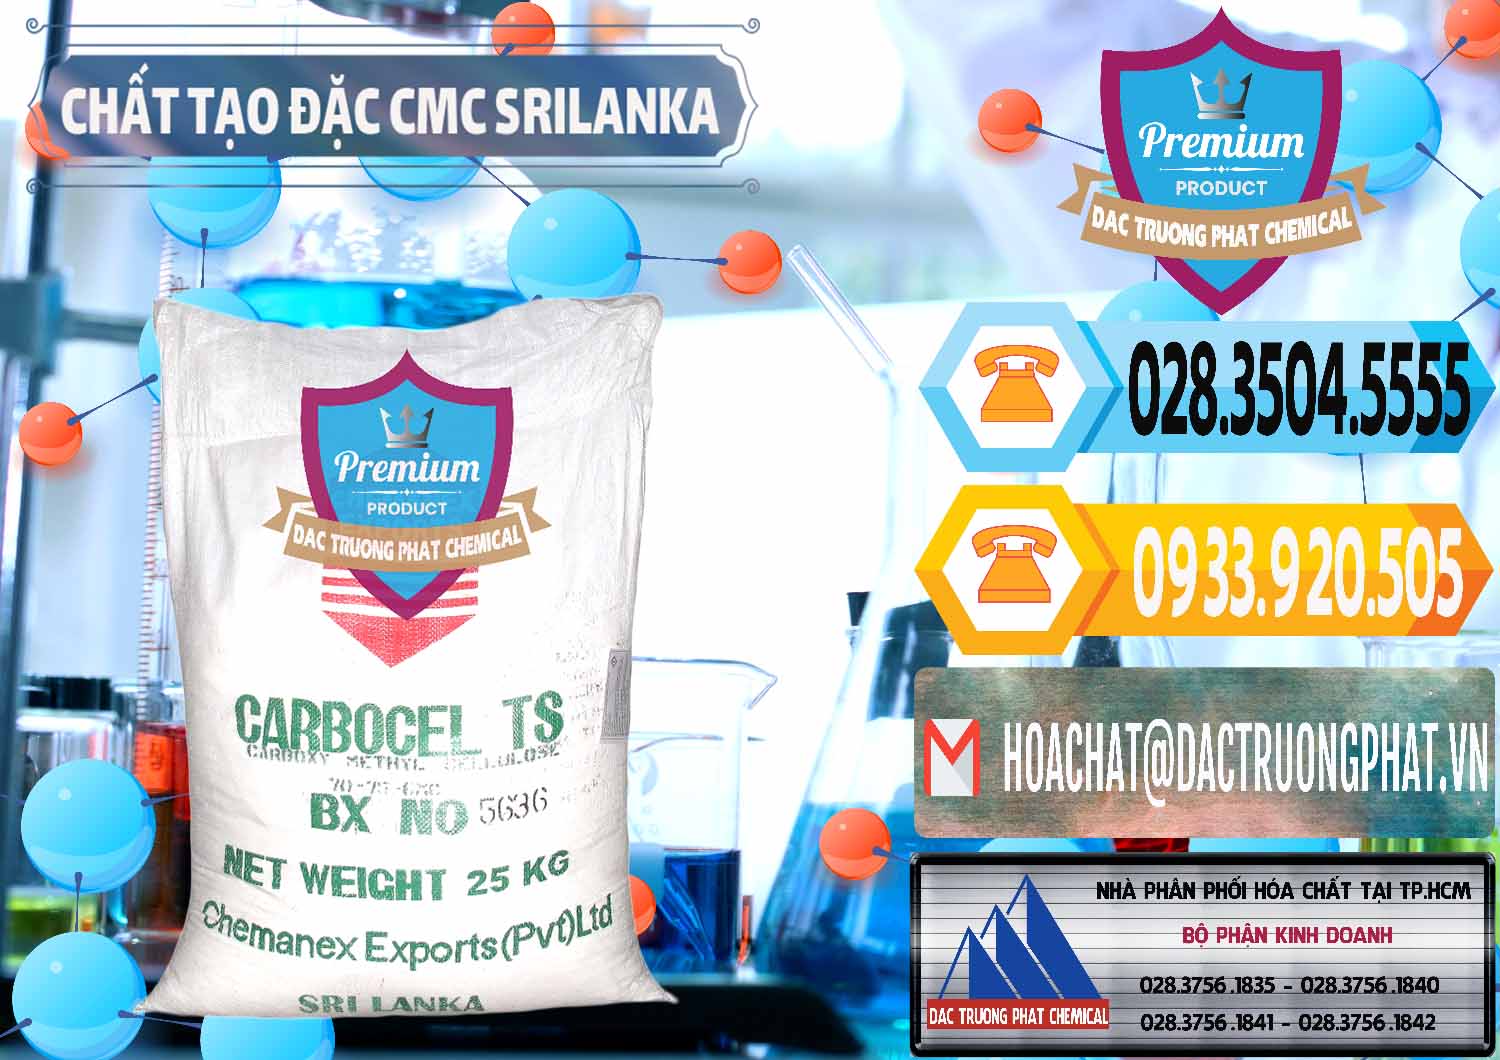 Chuyên bán ( cung cấp ) Chất Tạo Đặc CMC - Carboxyl Methyl Cellulose Srilanka - 0045 - Đơn vị bán ( phân phối ) hóa chất tại TP.HCM - hoachattayrua.net